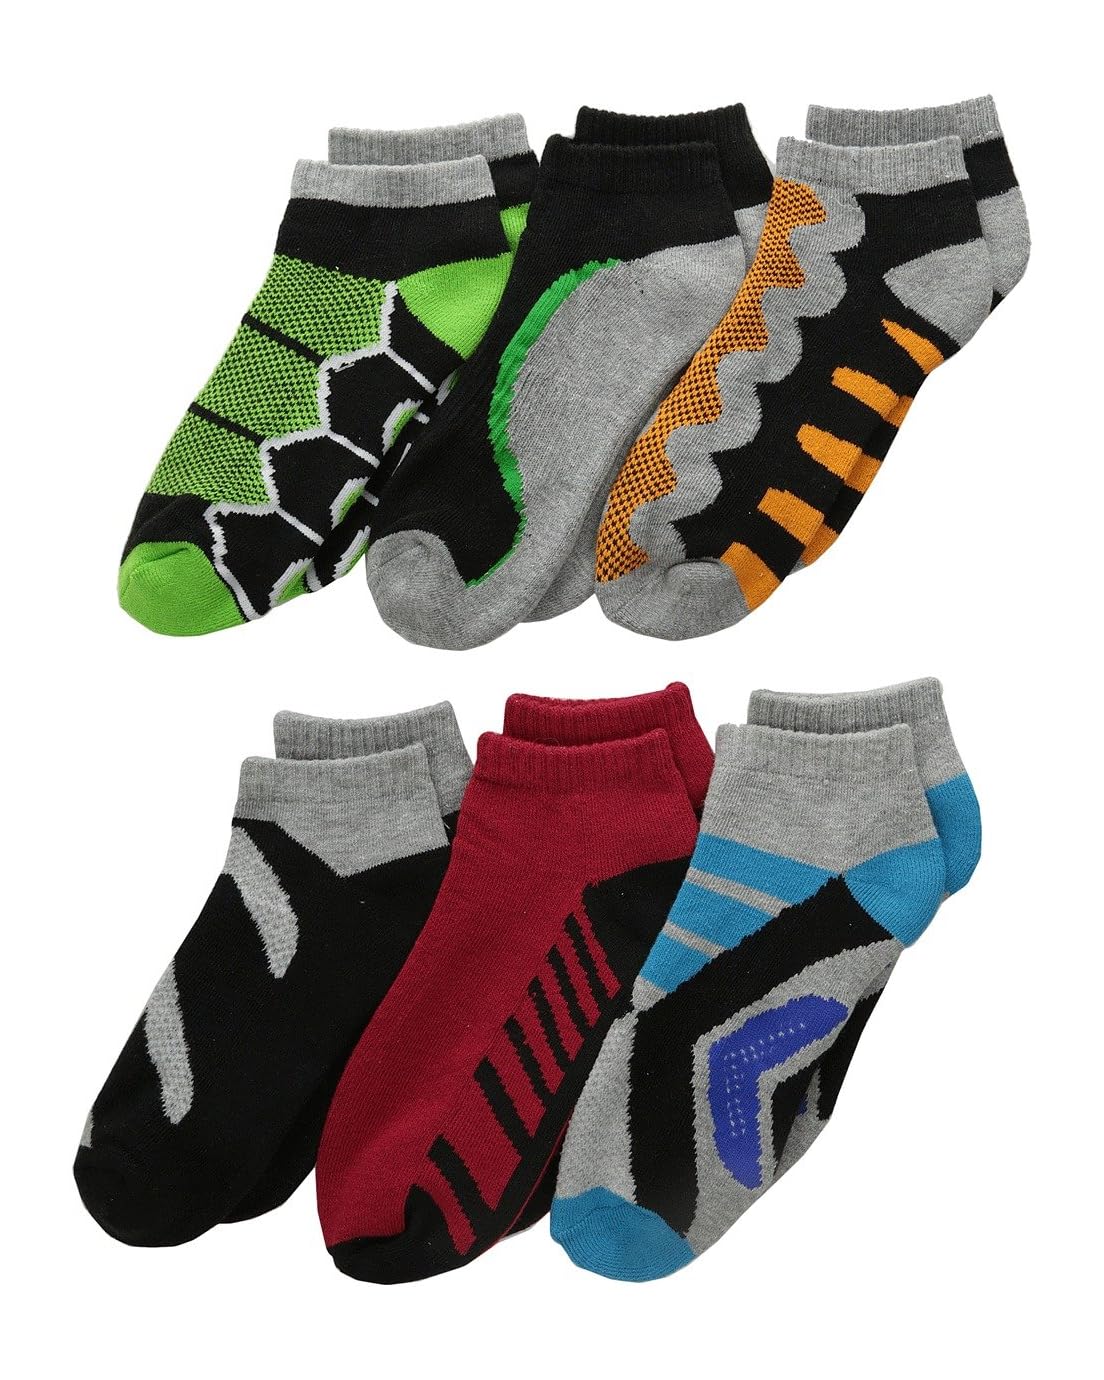 Jefferies Socks Tech Sport Low Cut 6-Pack (Toddler/Little Kid/Big Kid)